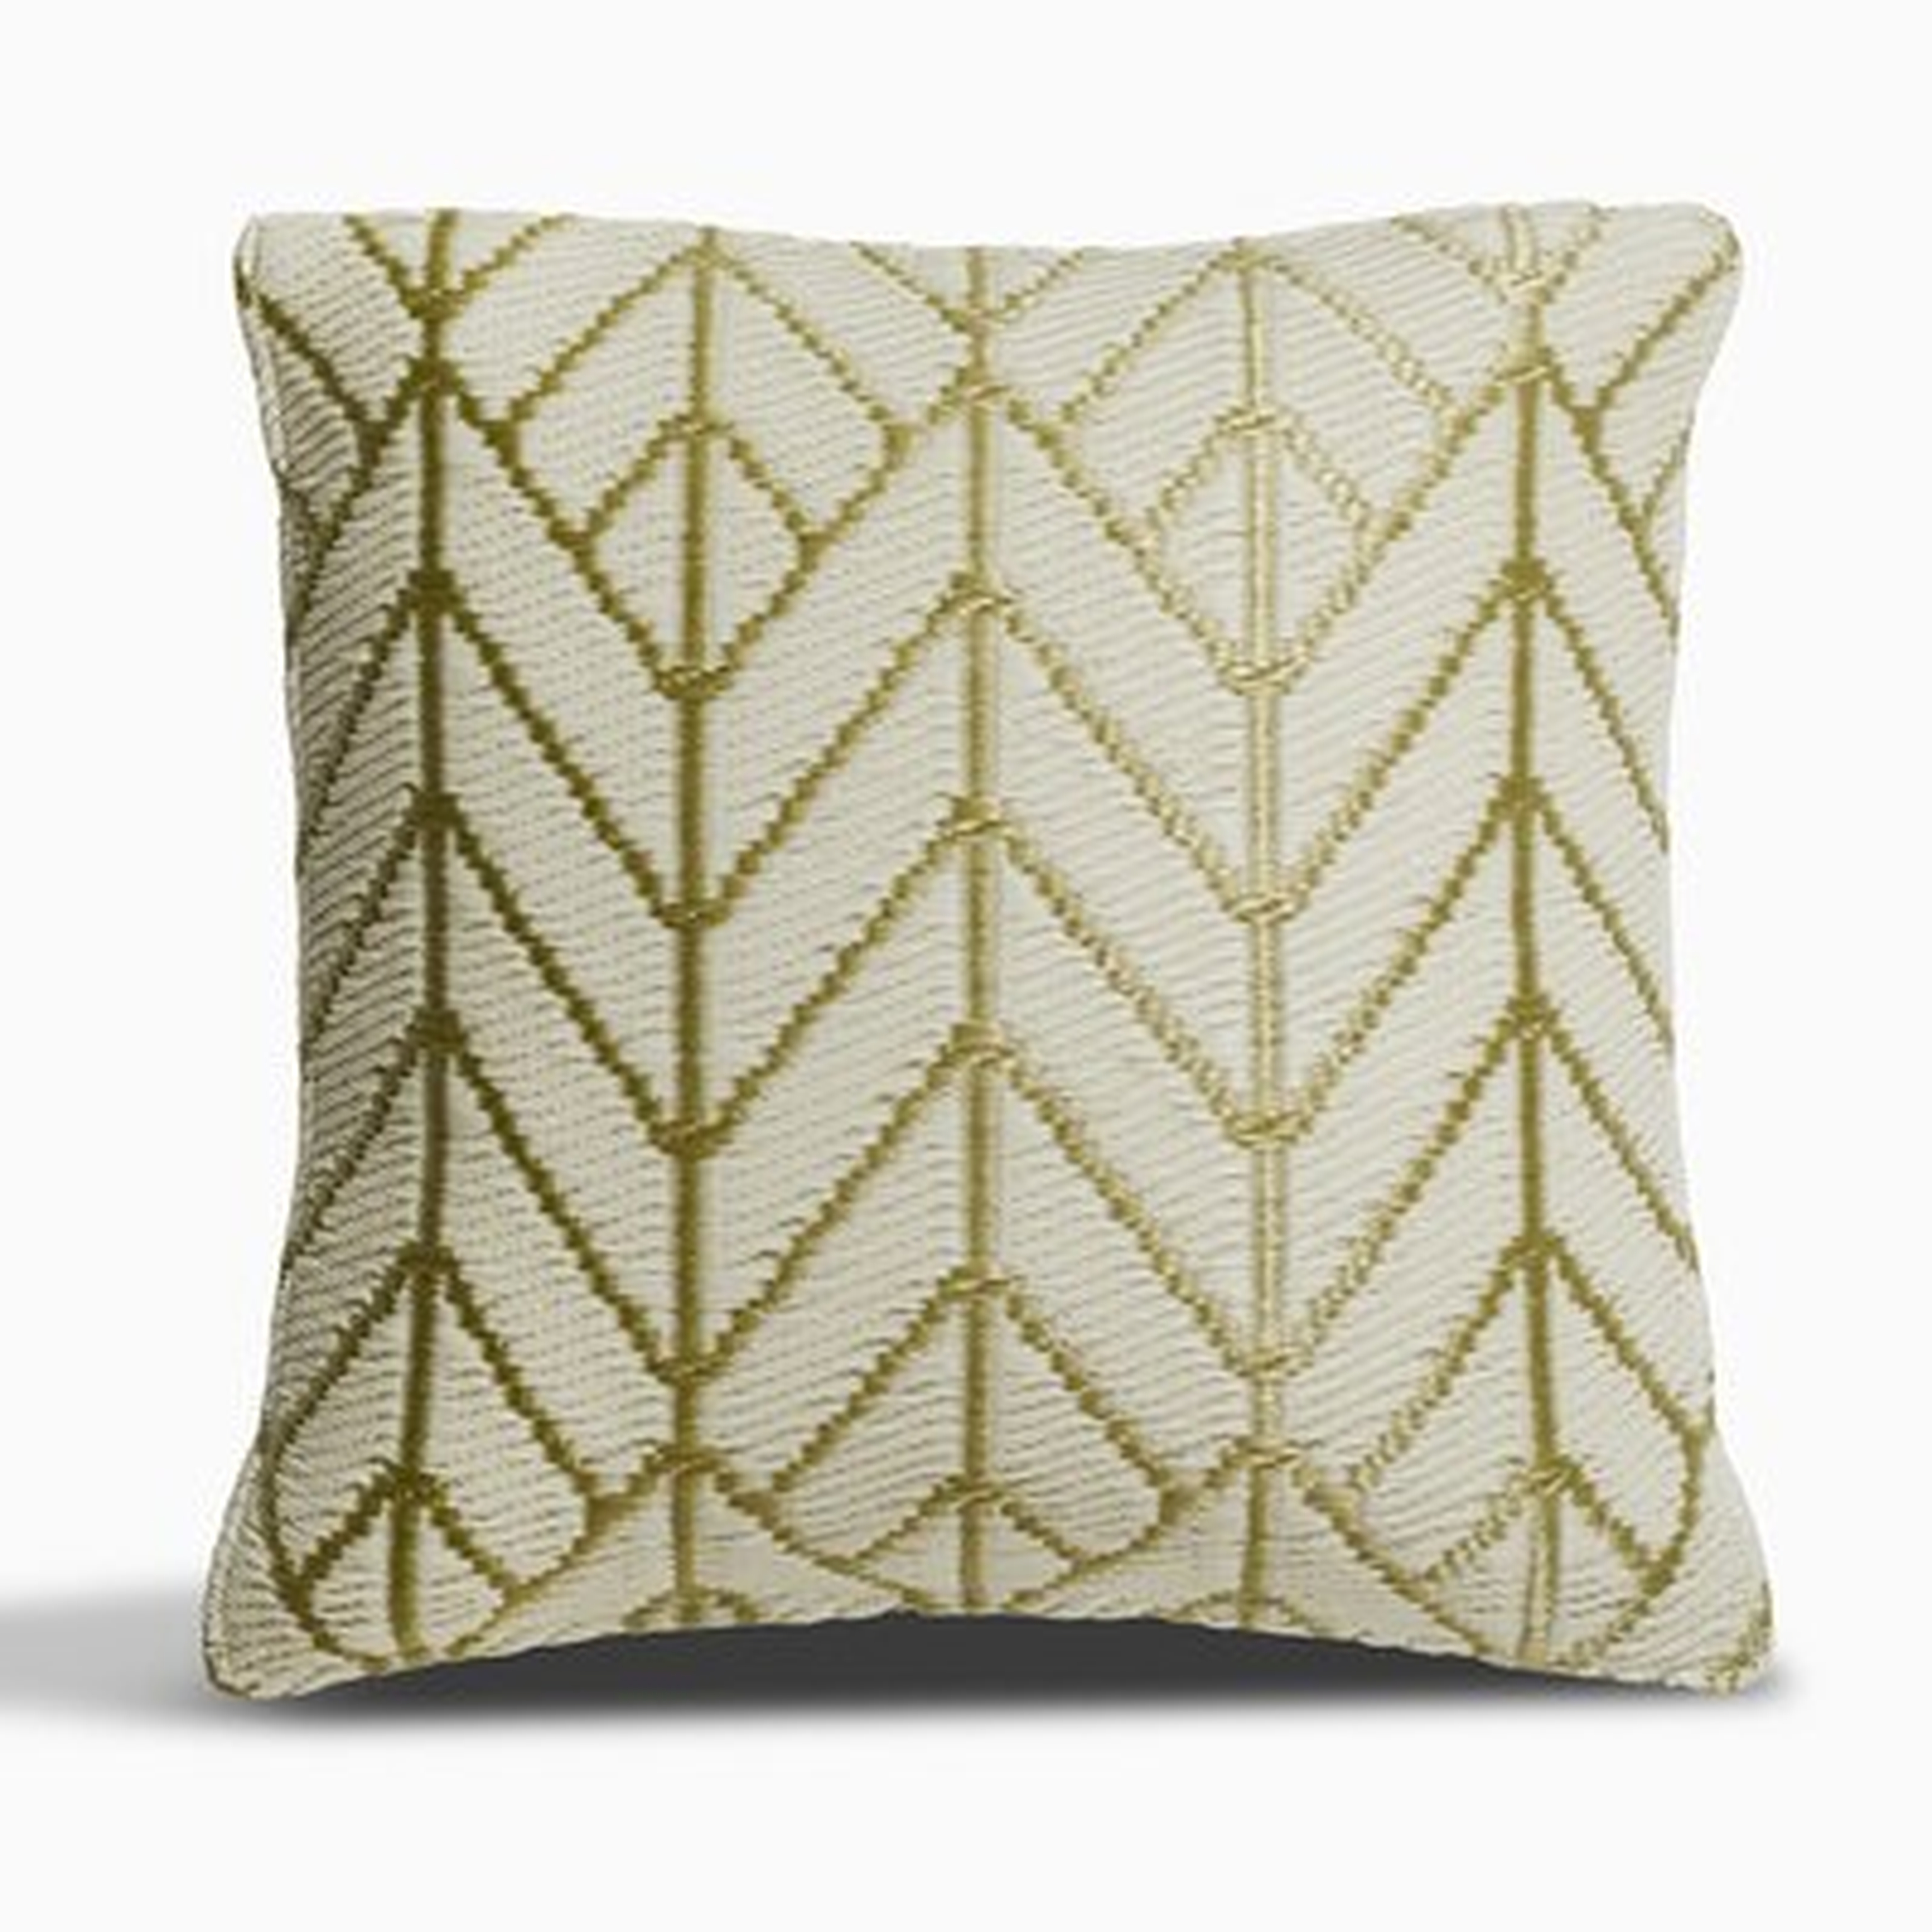 Sydney Outdoor Accent Pillow - Gold & Cream (16.5" X 16.5") - Wayfair